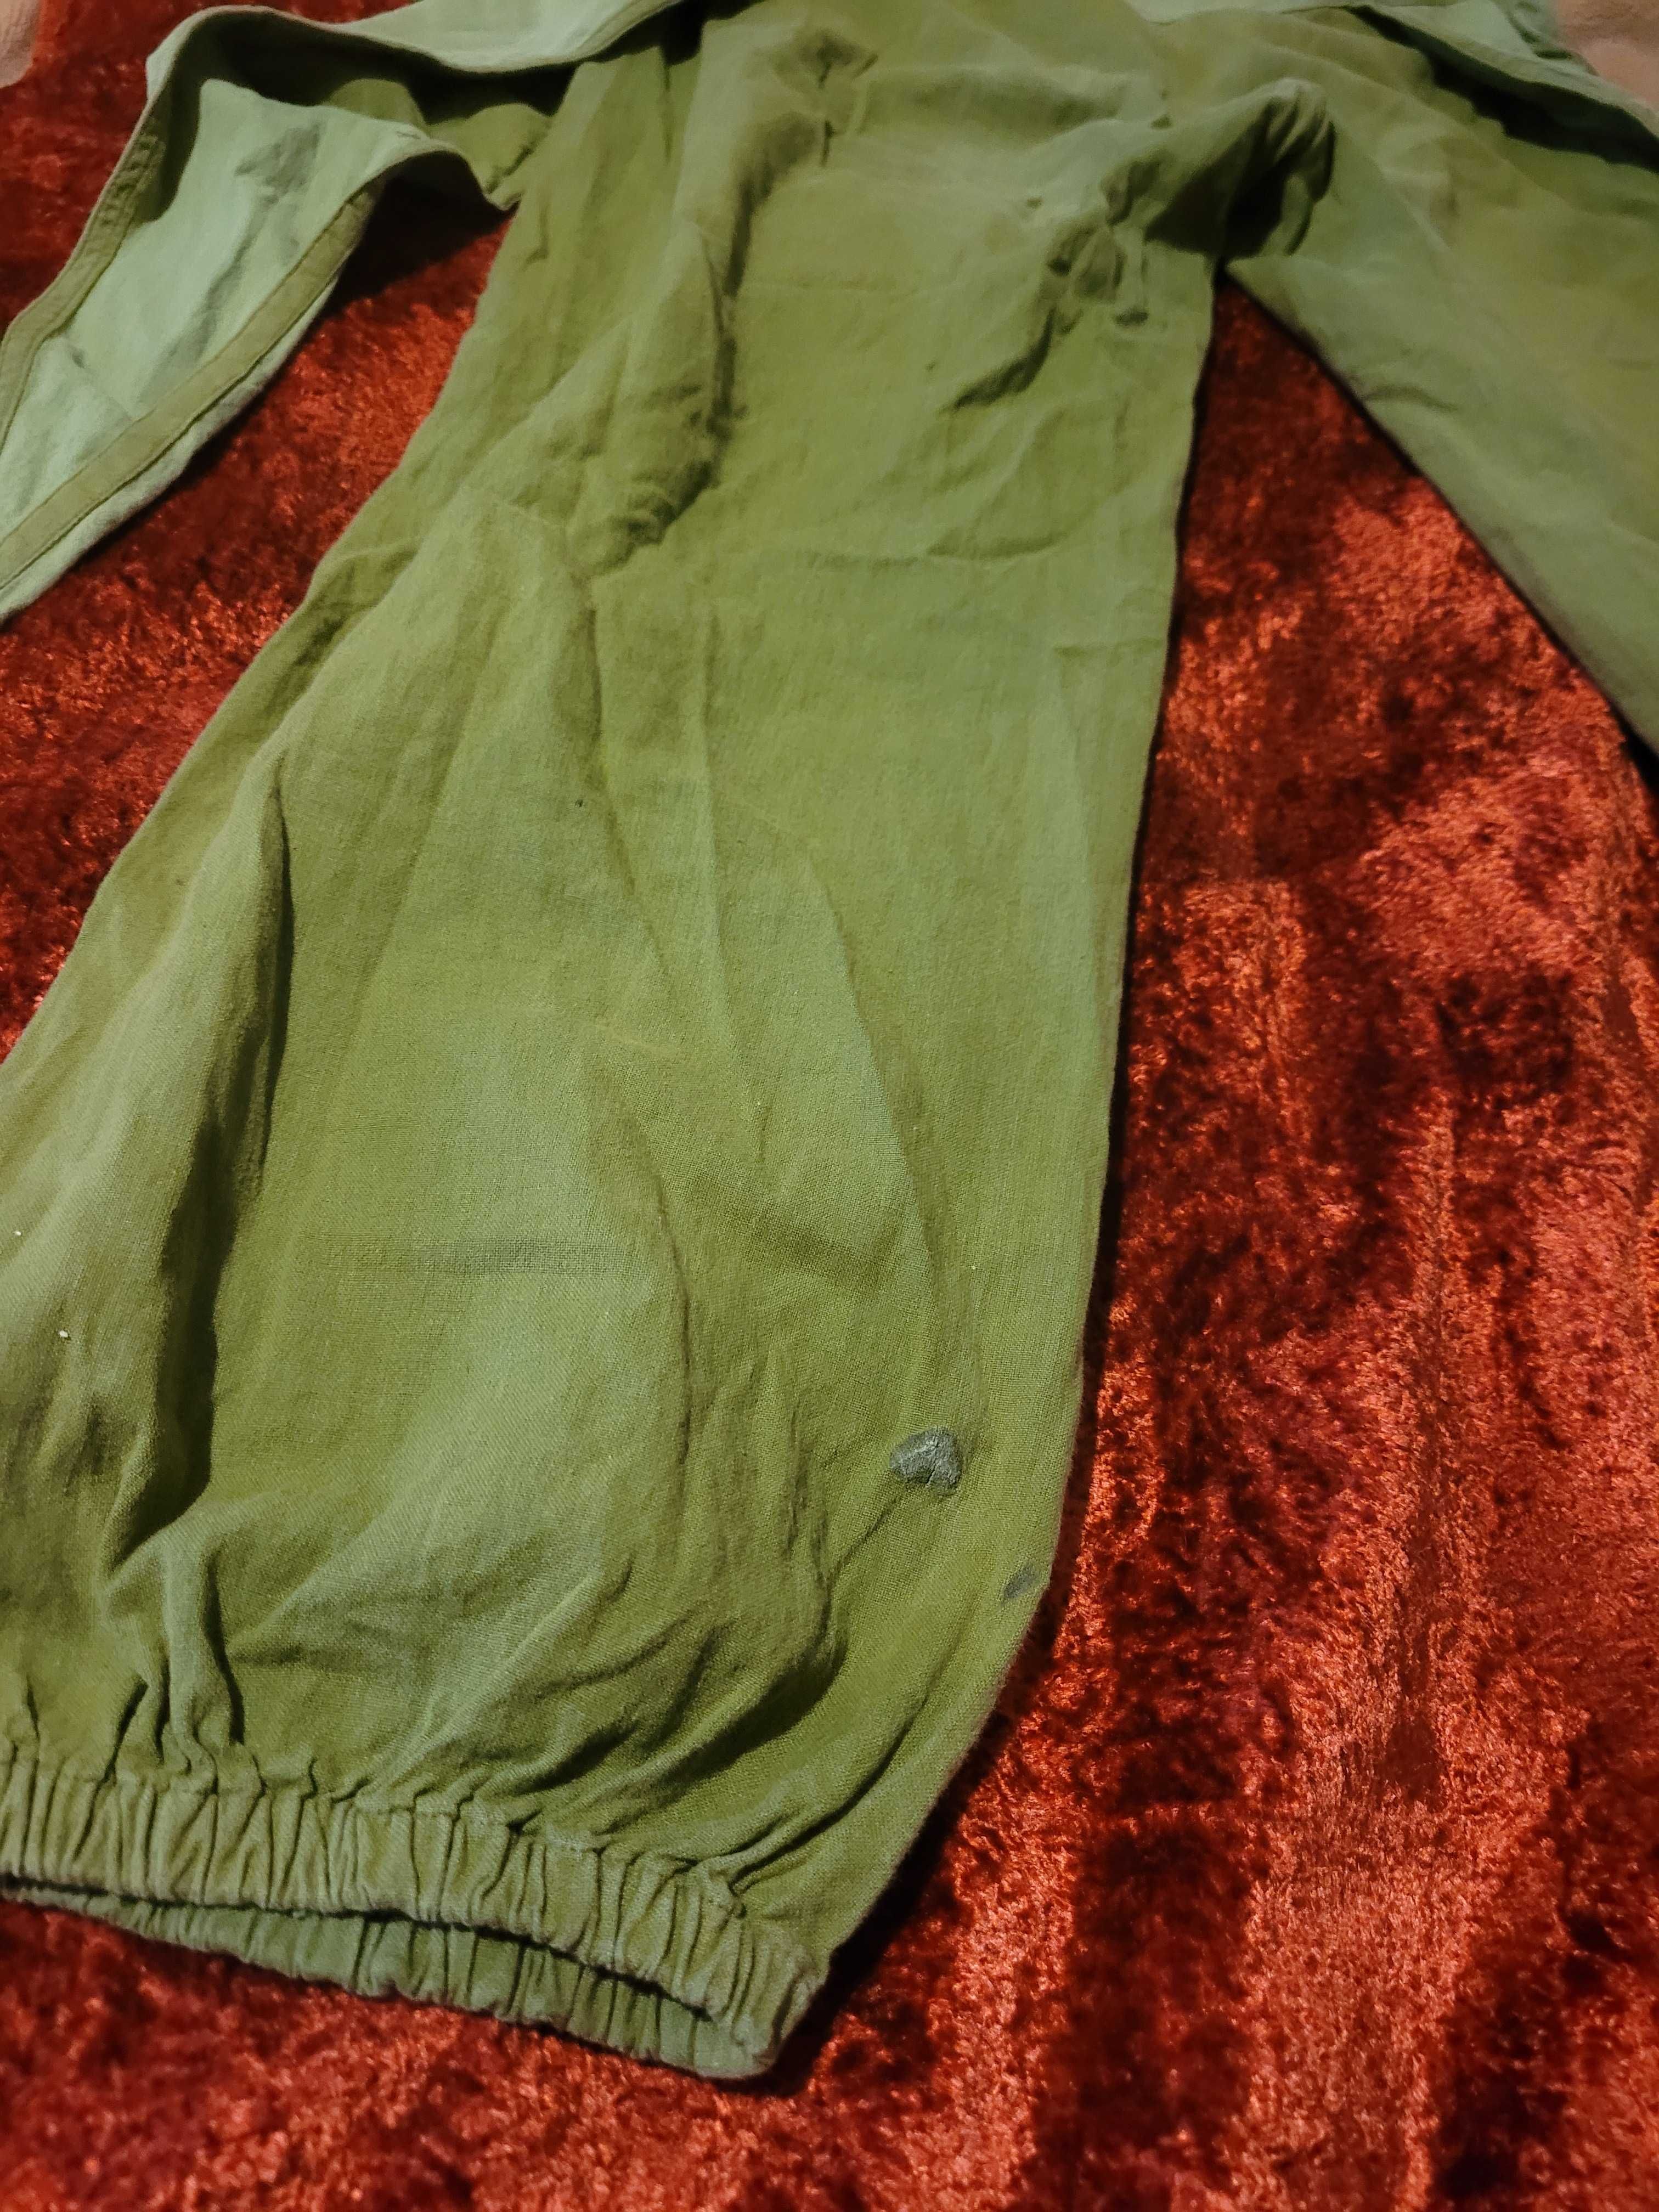 Spodnie szarawary, luźne, M, zielone